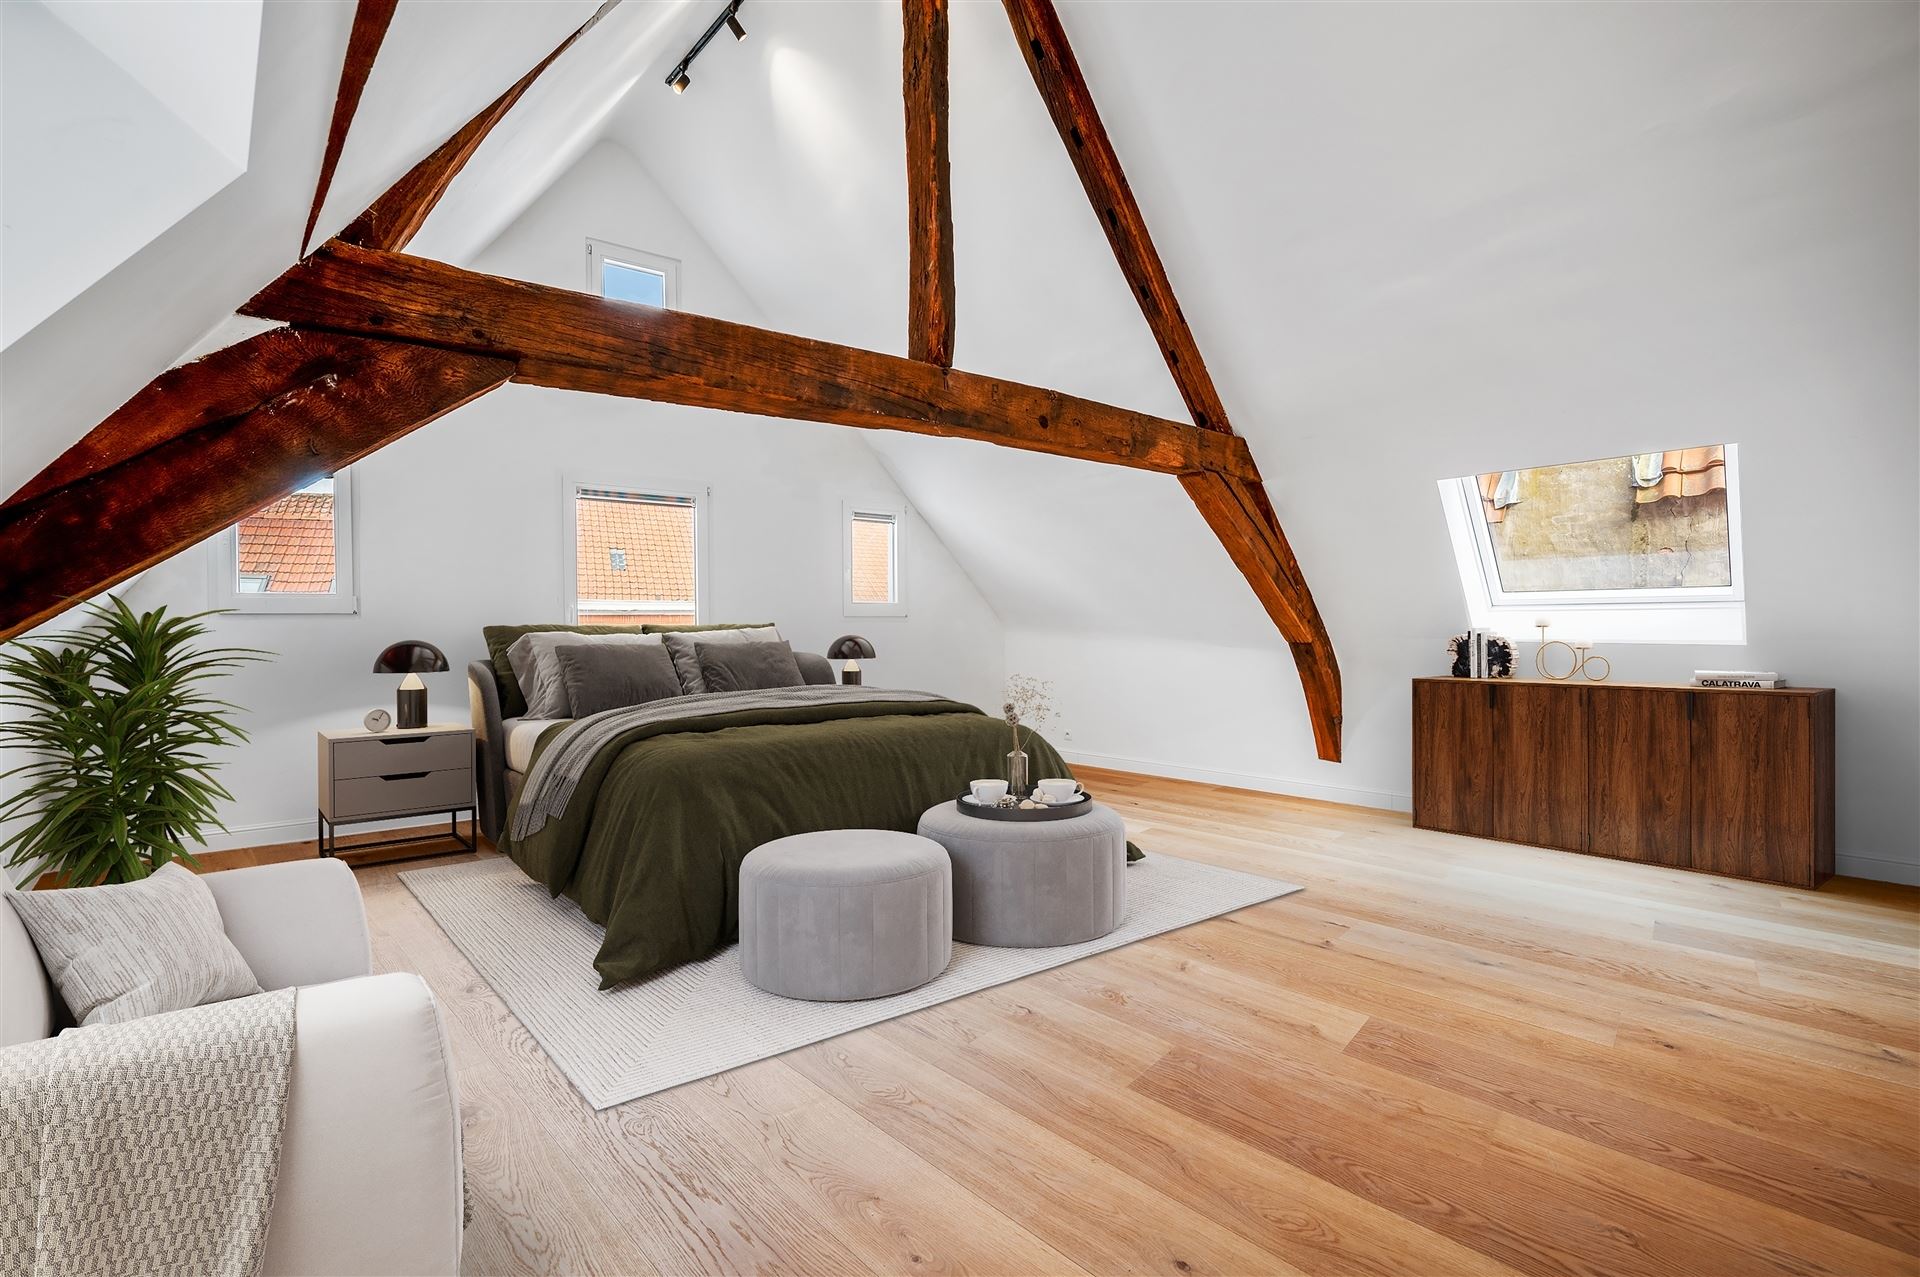 Prachtige energiezuinige woning met 5 slaapkamers en garage pal in het centrum van de bruisende stad Mechelen foto 2